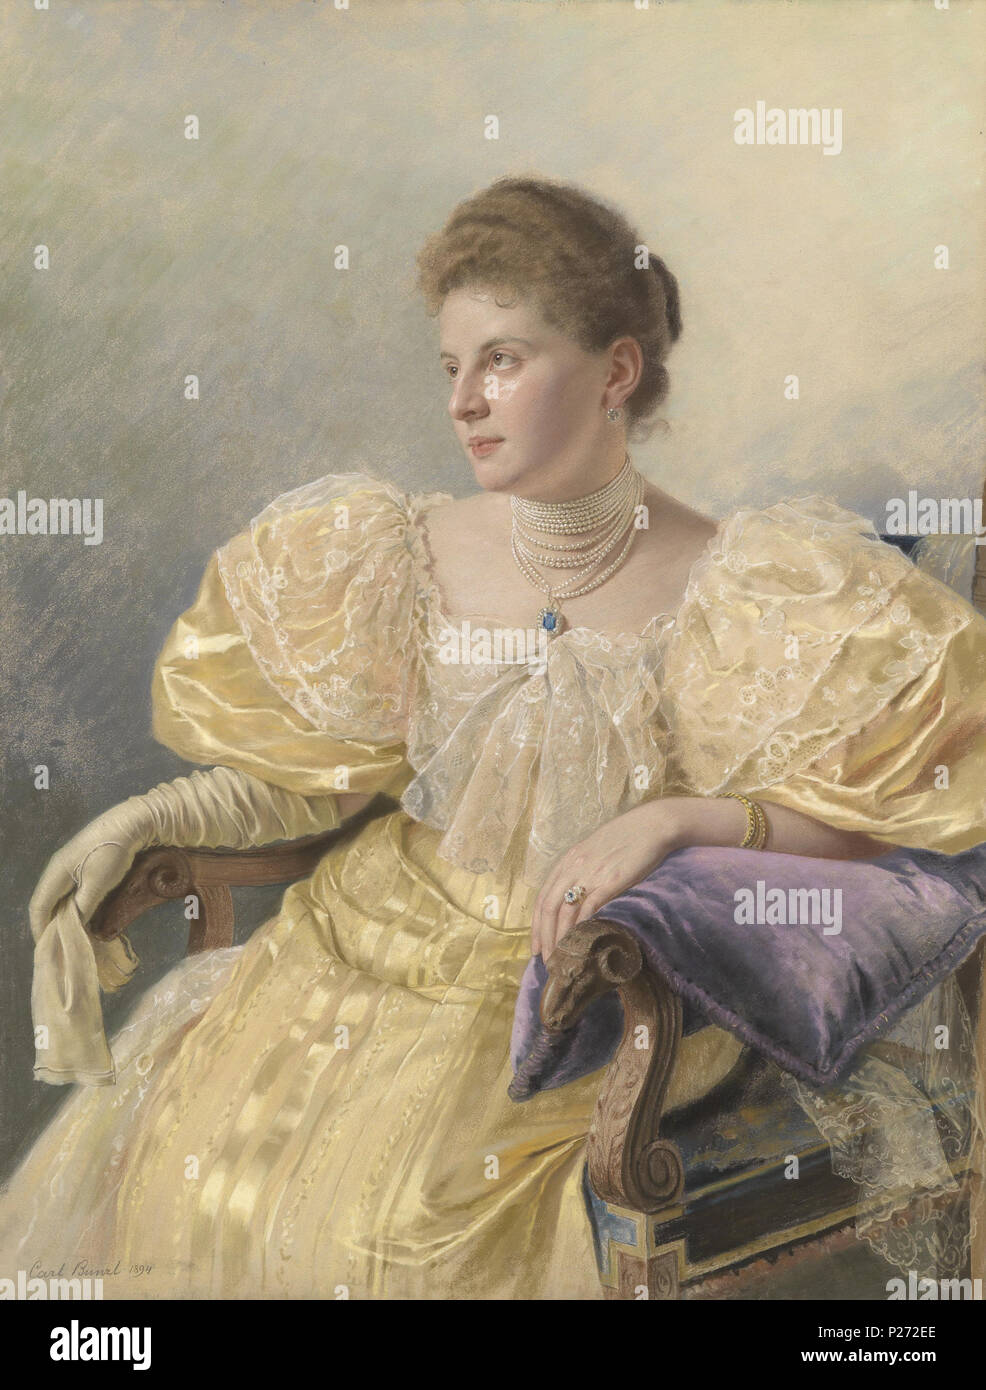 52 Carl Bunzl Porträt einer eleganten Dame in gelbem Kleid 1894 Stock Photo